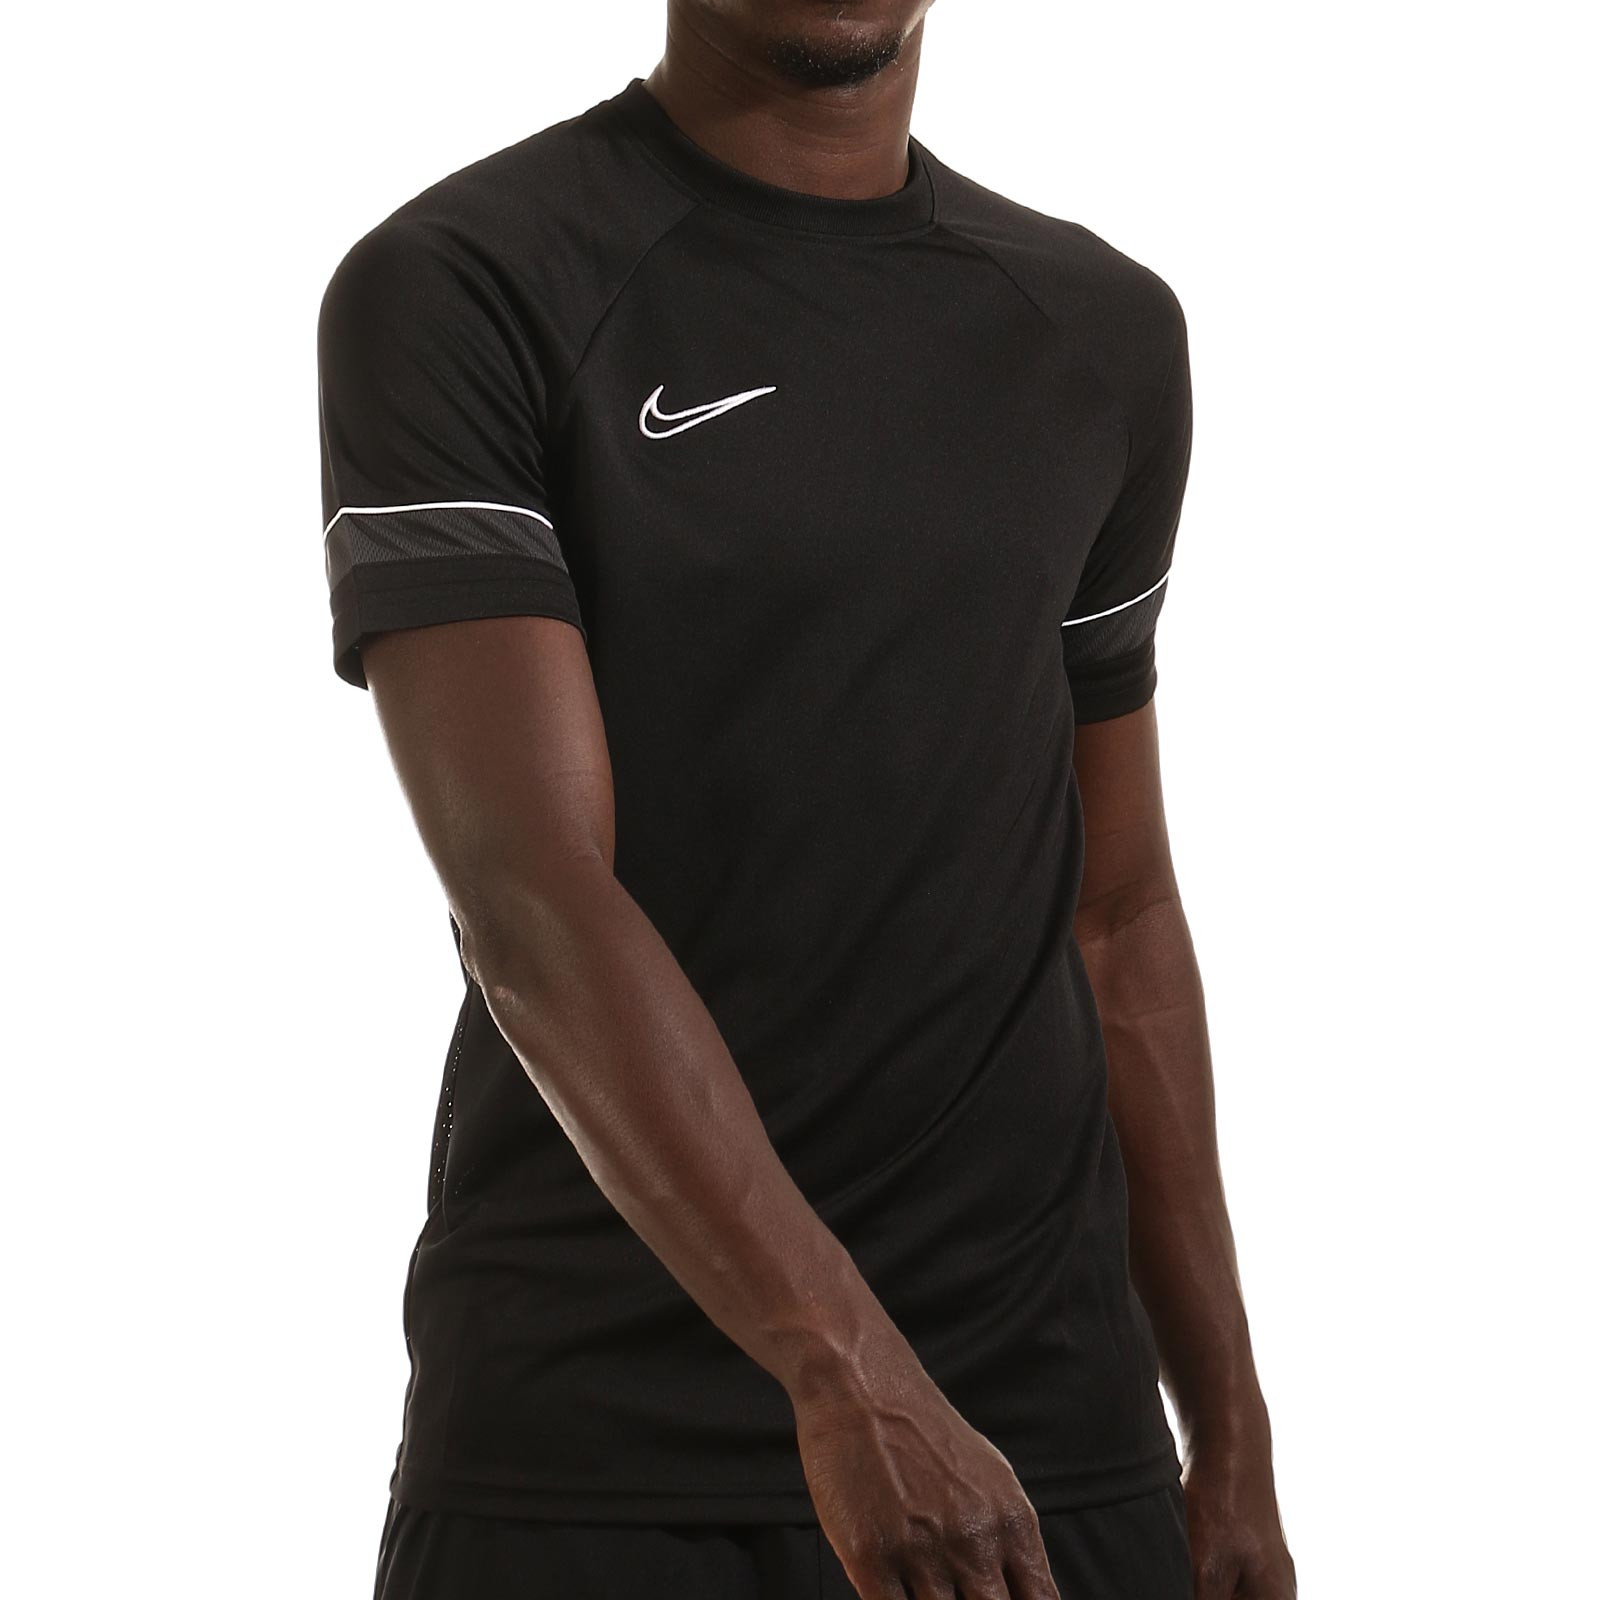 Nike Dri-Fit Academy negra | futbolmania